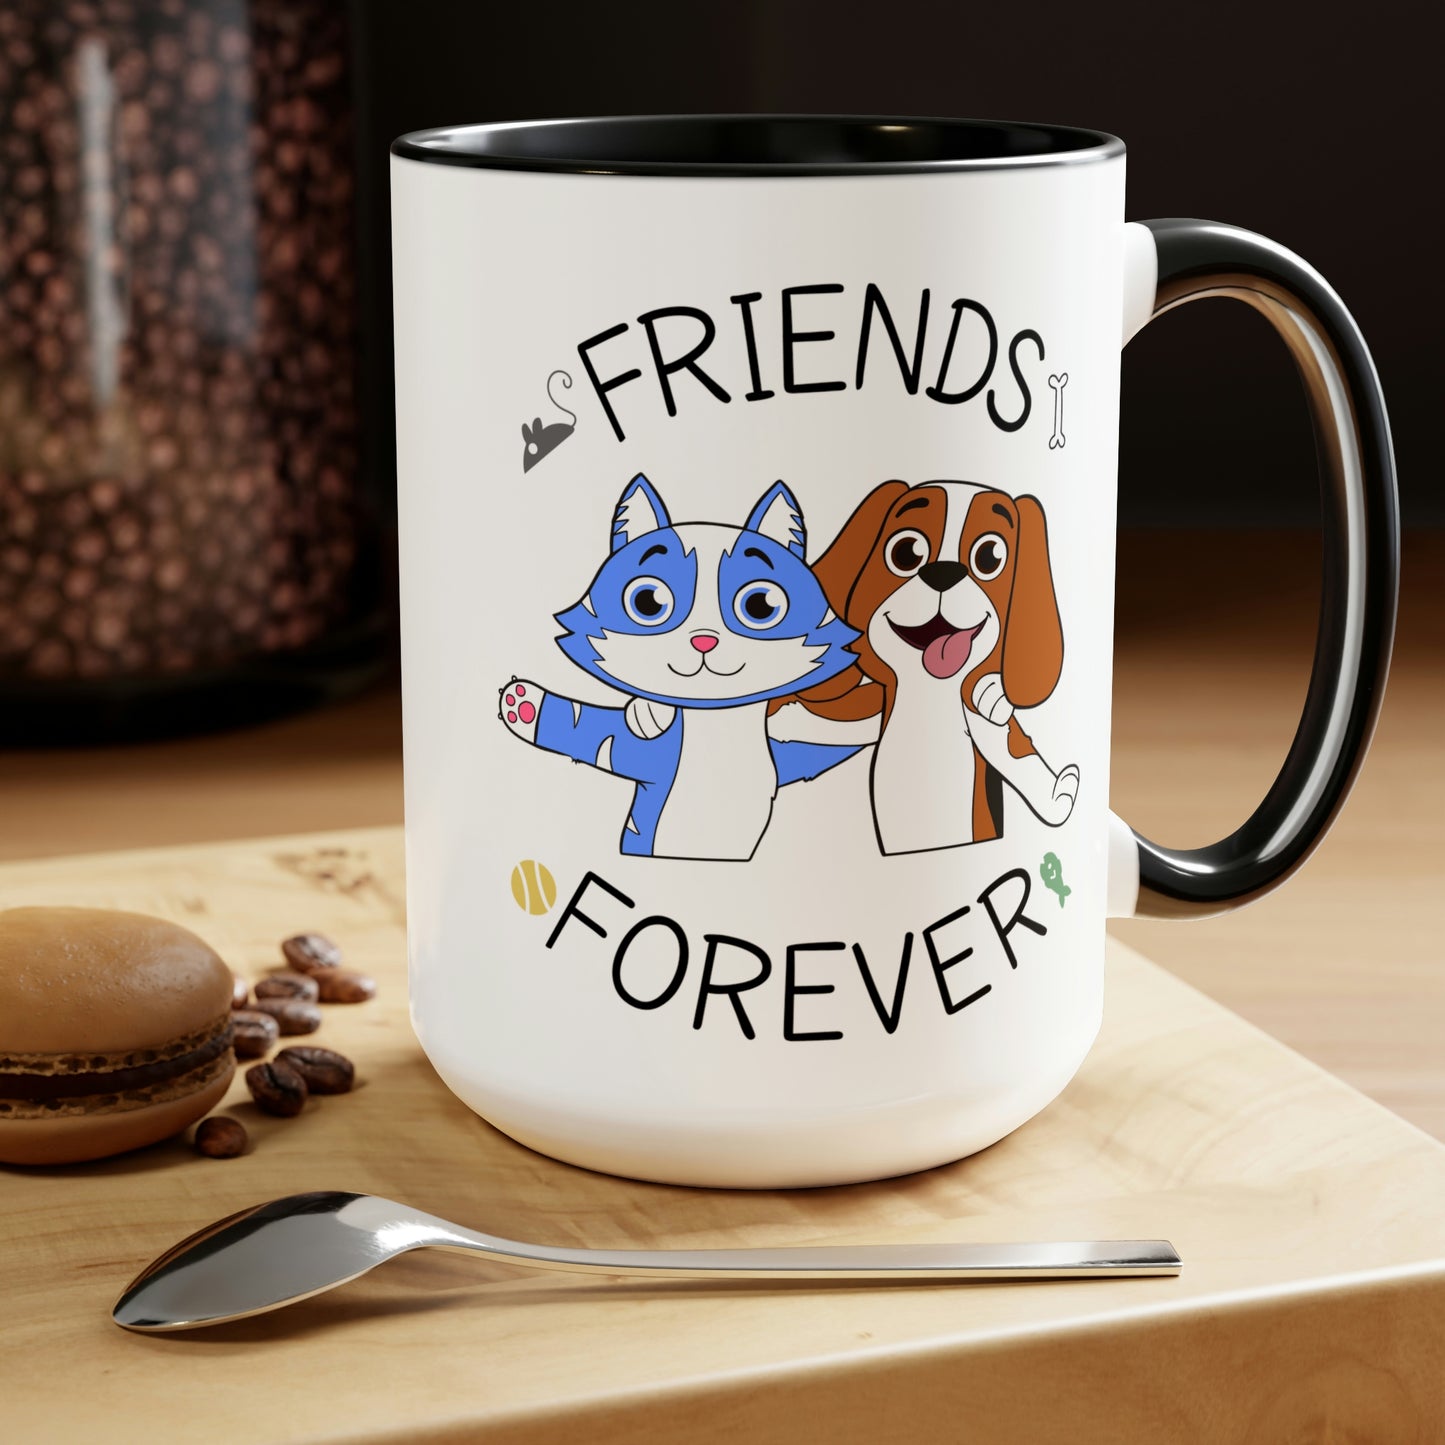 Friends Forever Premium Coffee Mug, 15oz